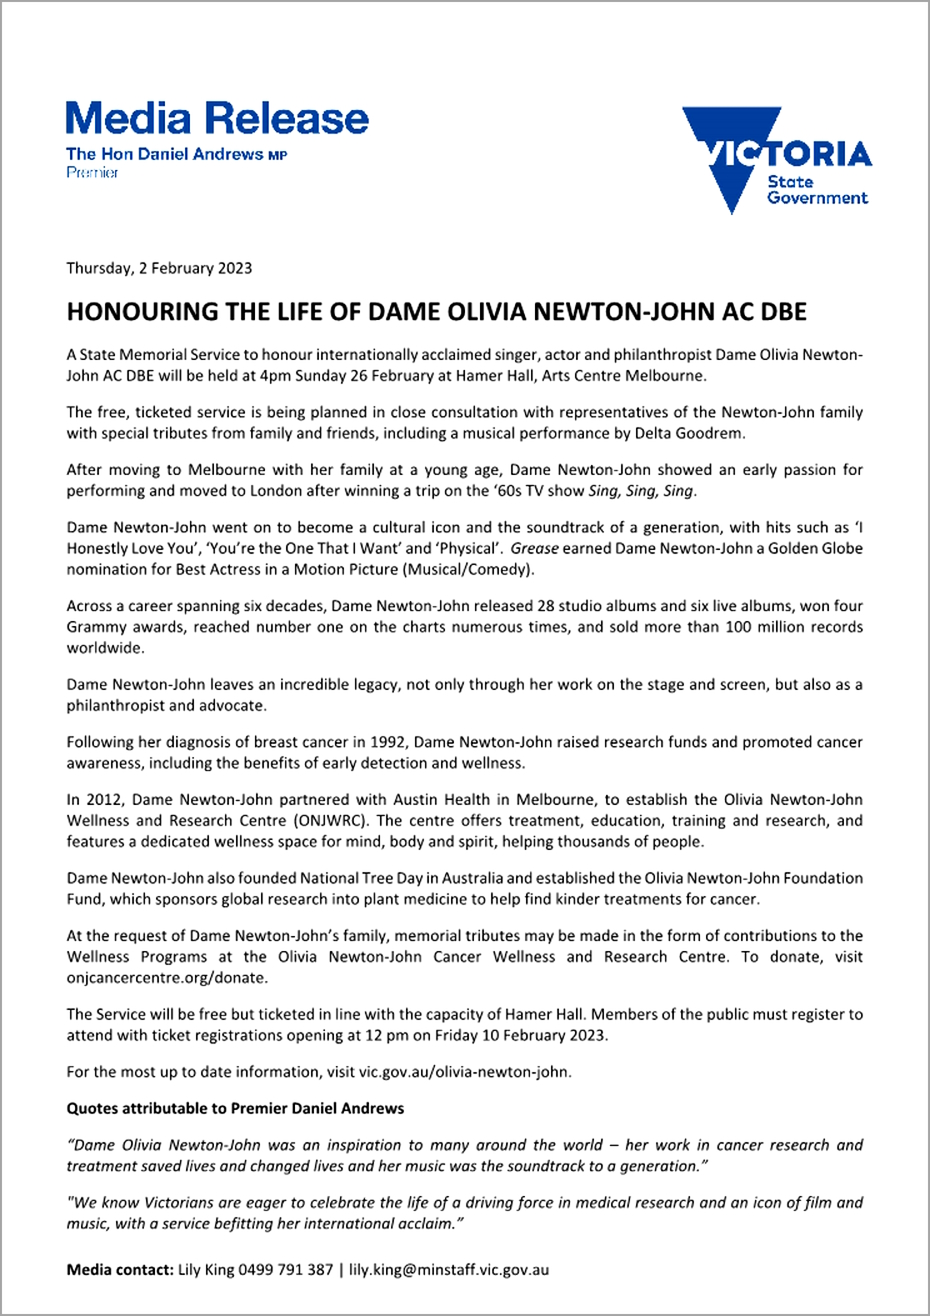 Media Release for Olivia's Memorial Service